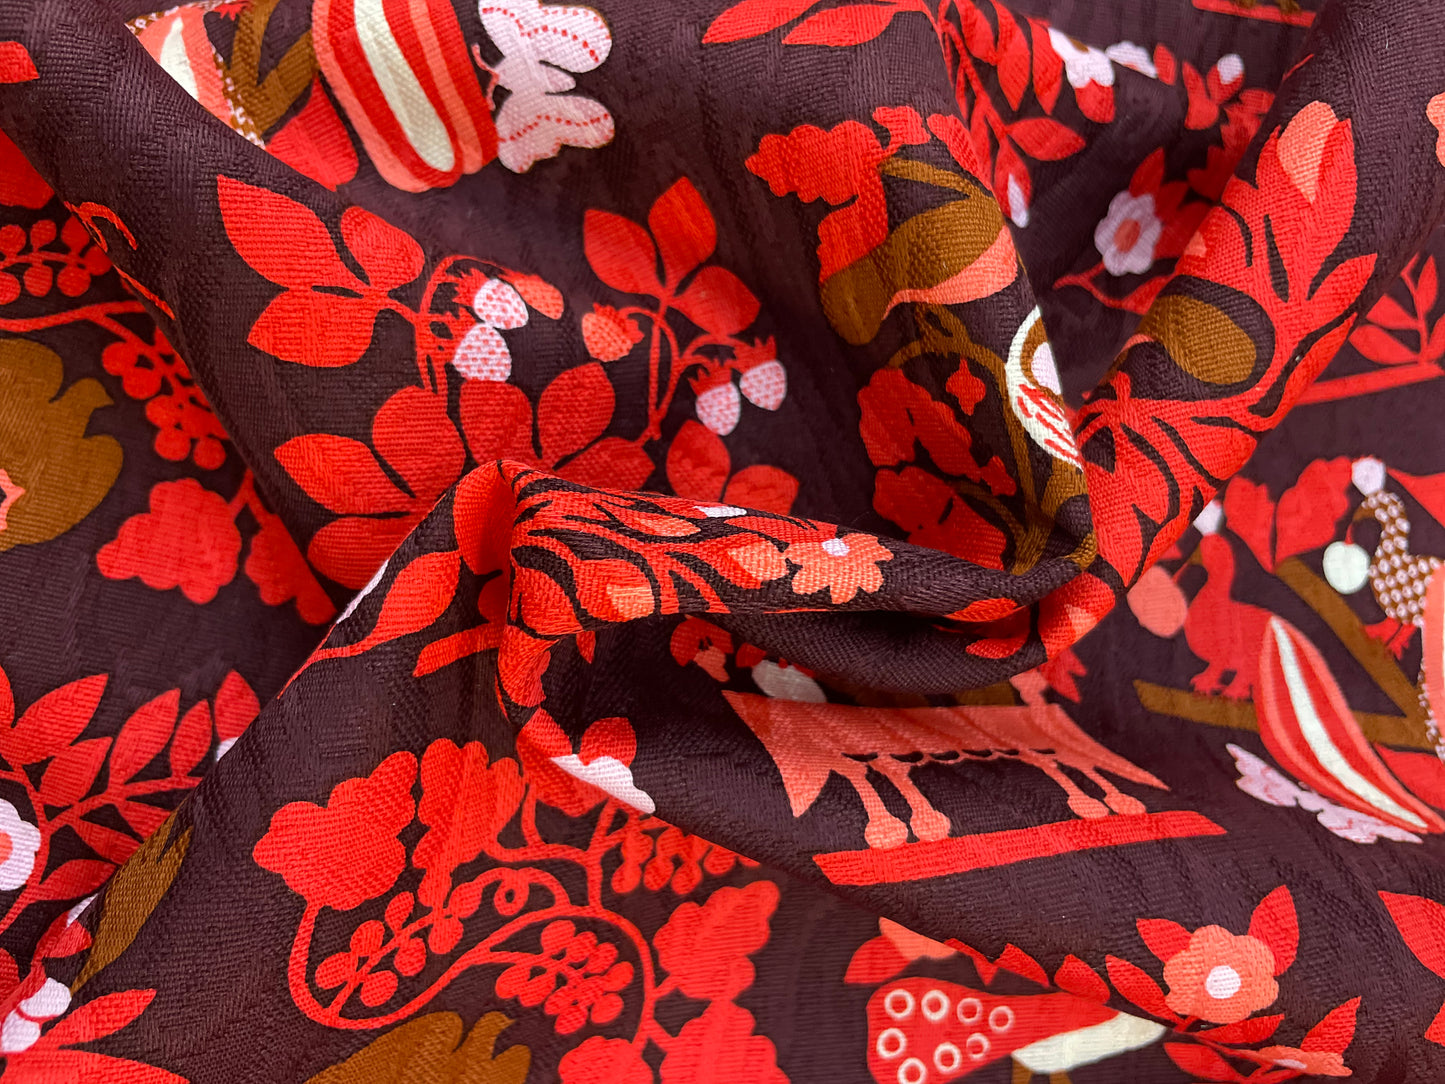 Designer Textured Print Cotton - Burgundy, Red & Brown